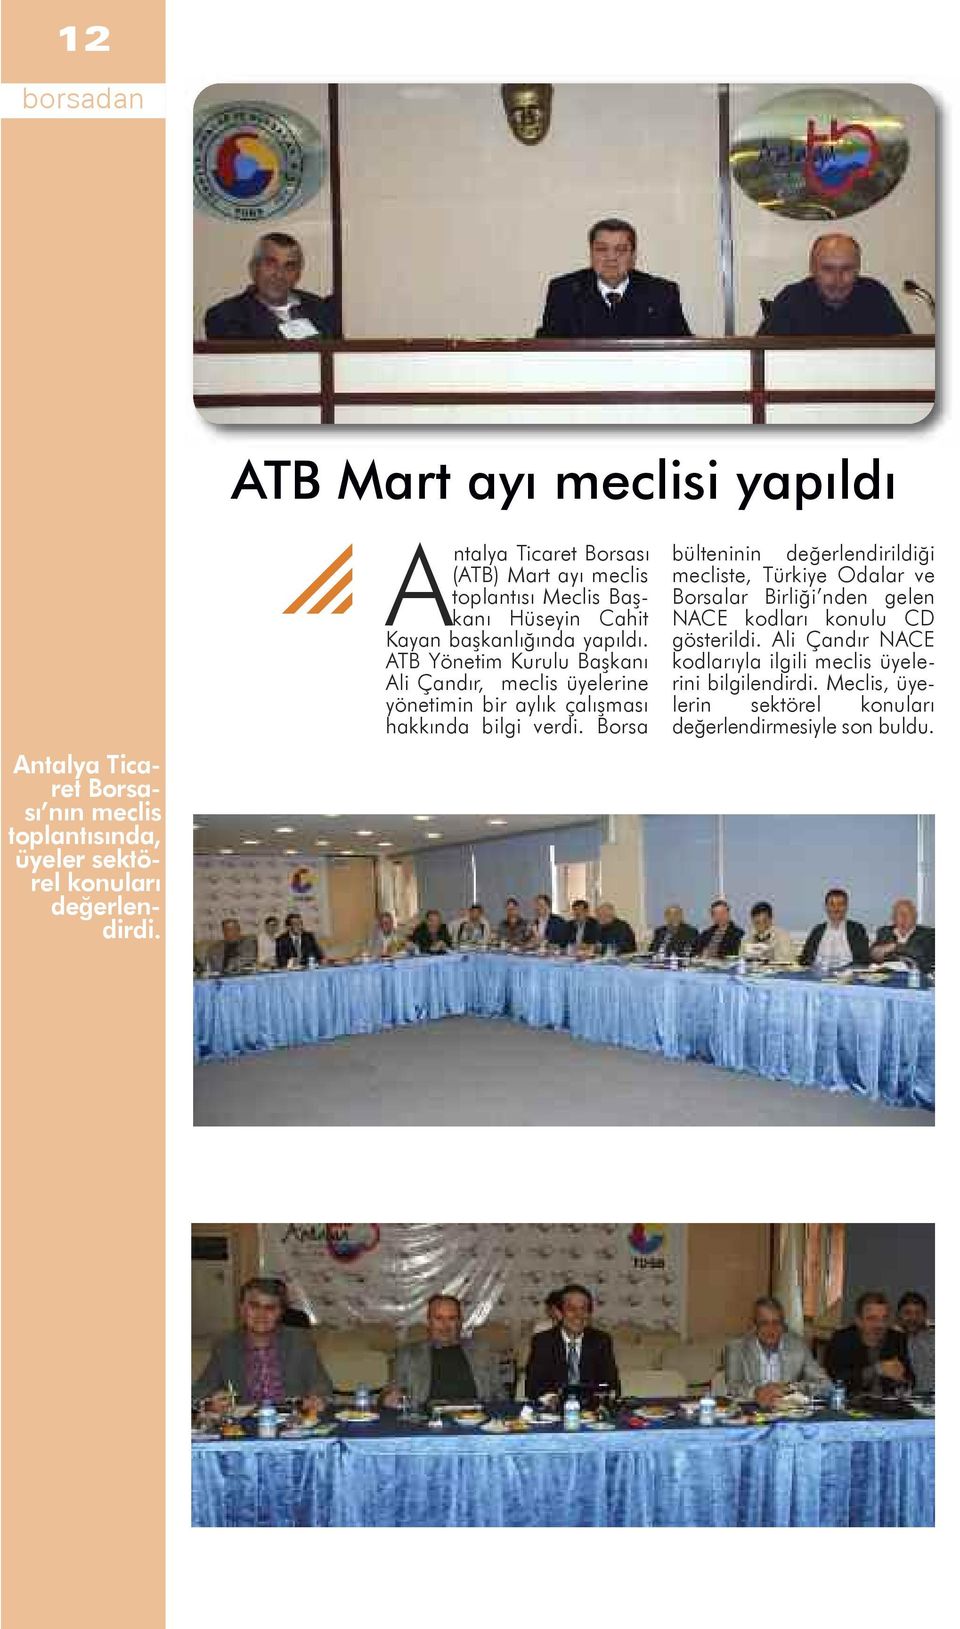 ATB Yönetim Kurulu Başkanı Ali Çandır, meclis üyelerine yönetimin bir aylık çalışması hakkında bilgi verdi.